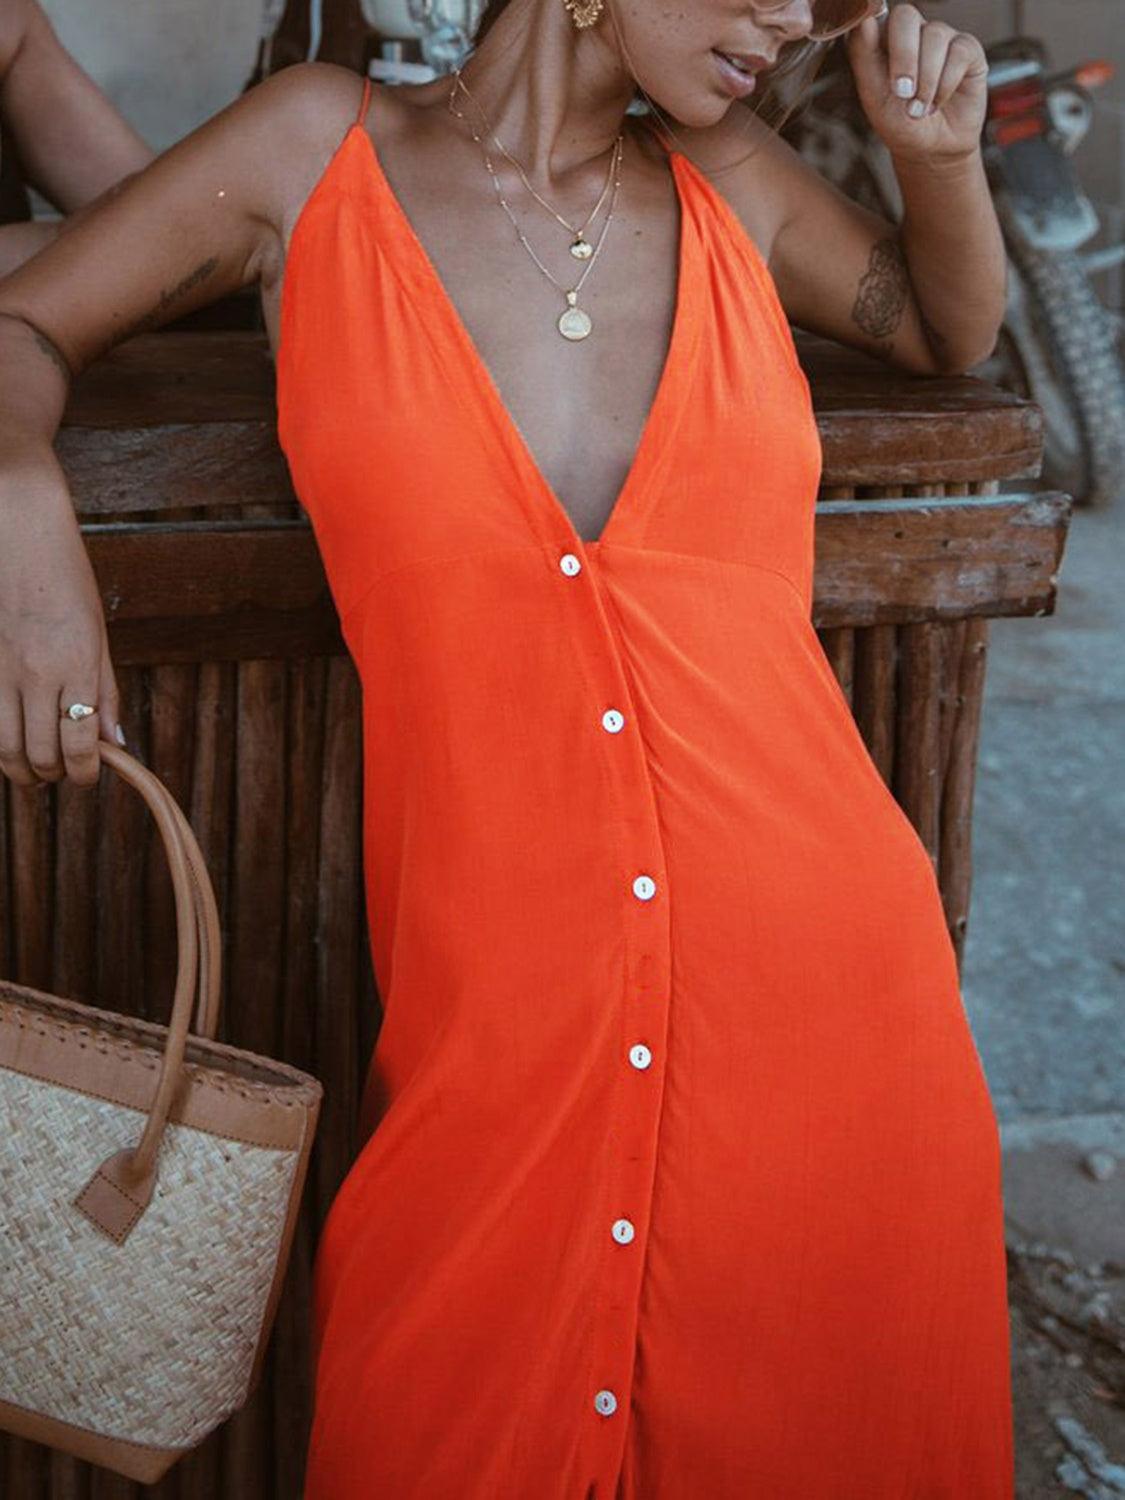 Bona Fide Fashion - Buttoned Plunge Midi Cami Dress - Women Fashion - Bona Fide Fashion